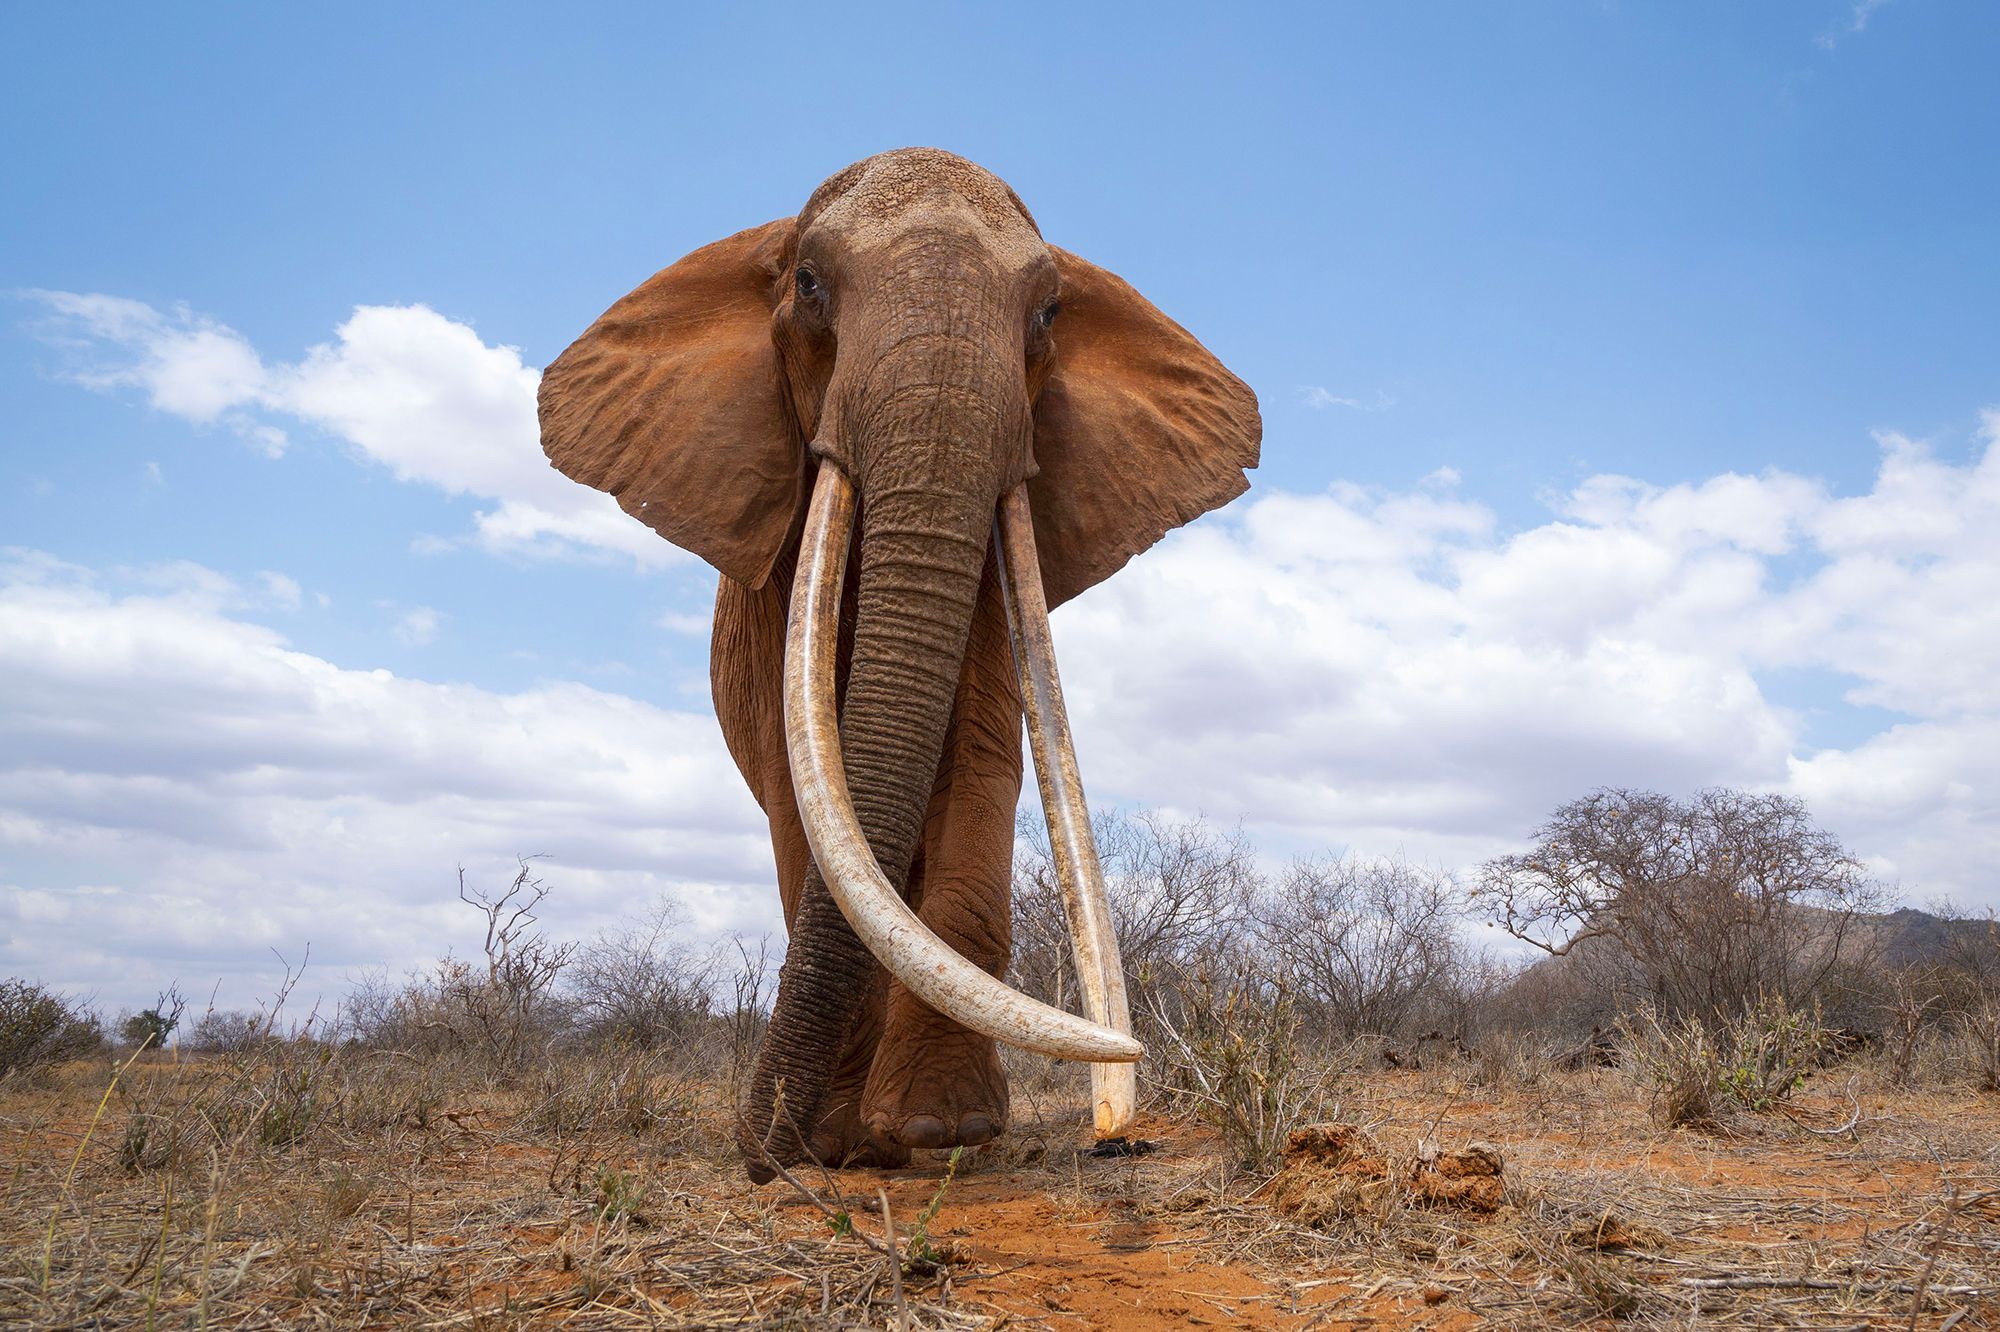 Les-dernieres-photos-de-la-reine-des-elephants.jpg